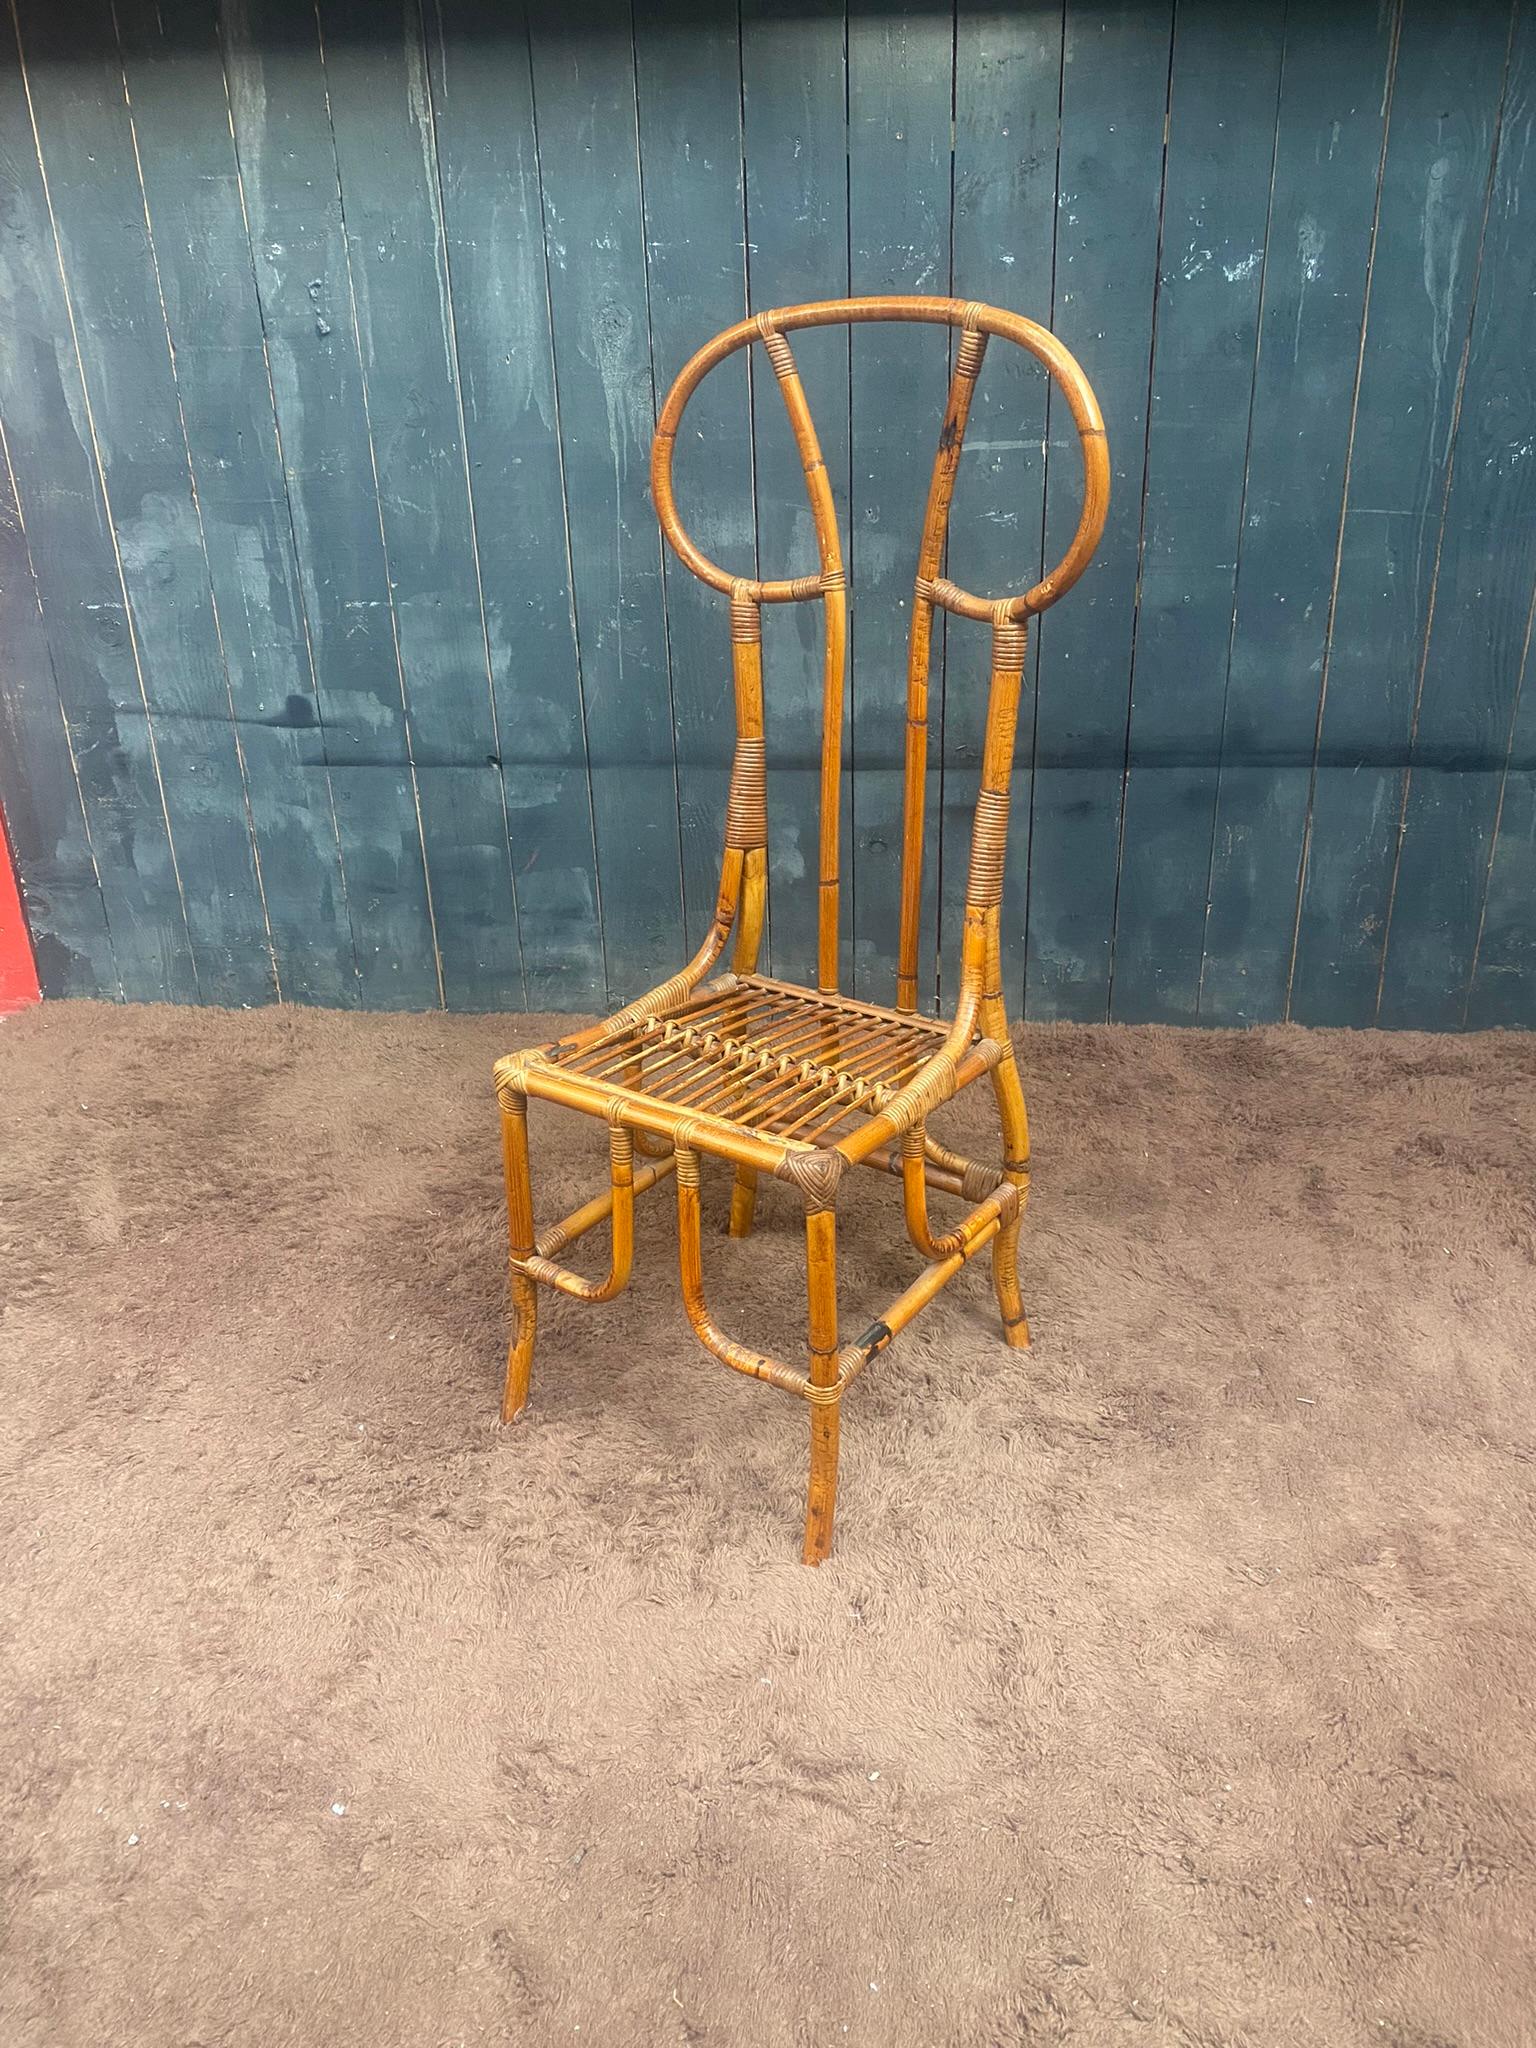 Original Bamboo chair circa 1970

Good condition.